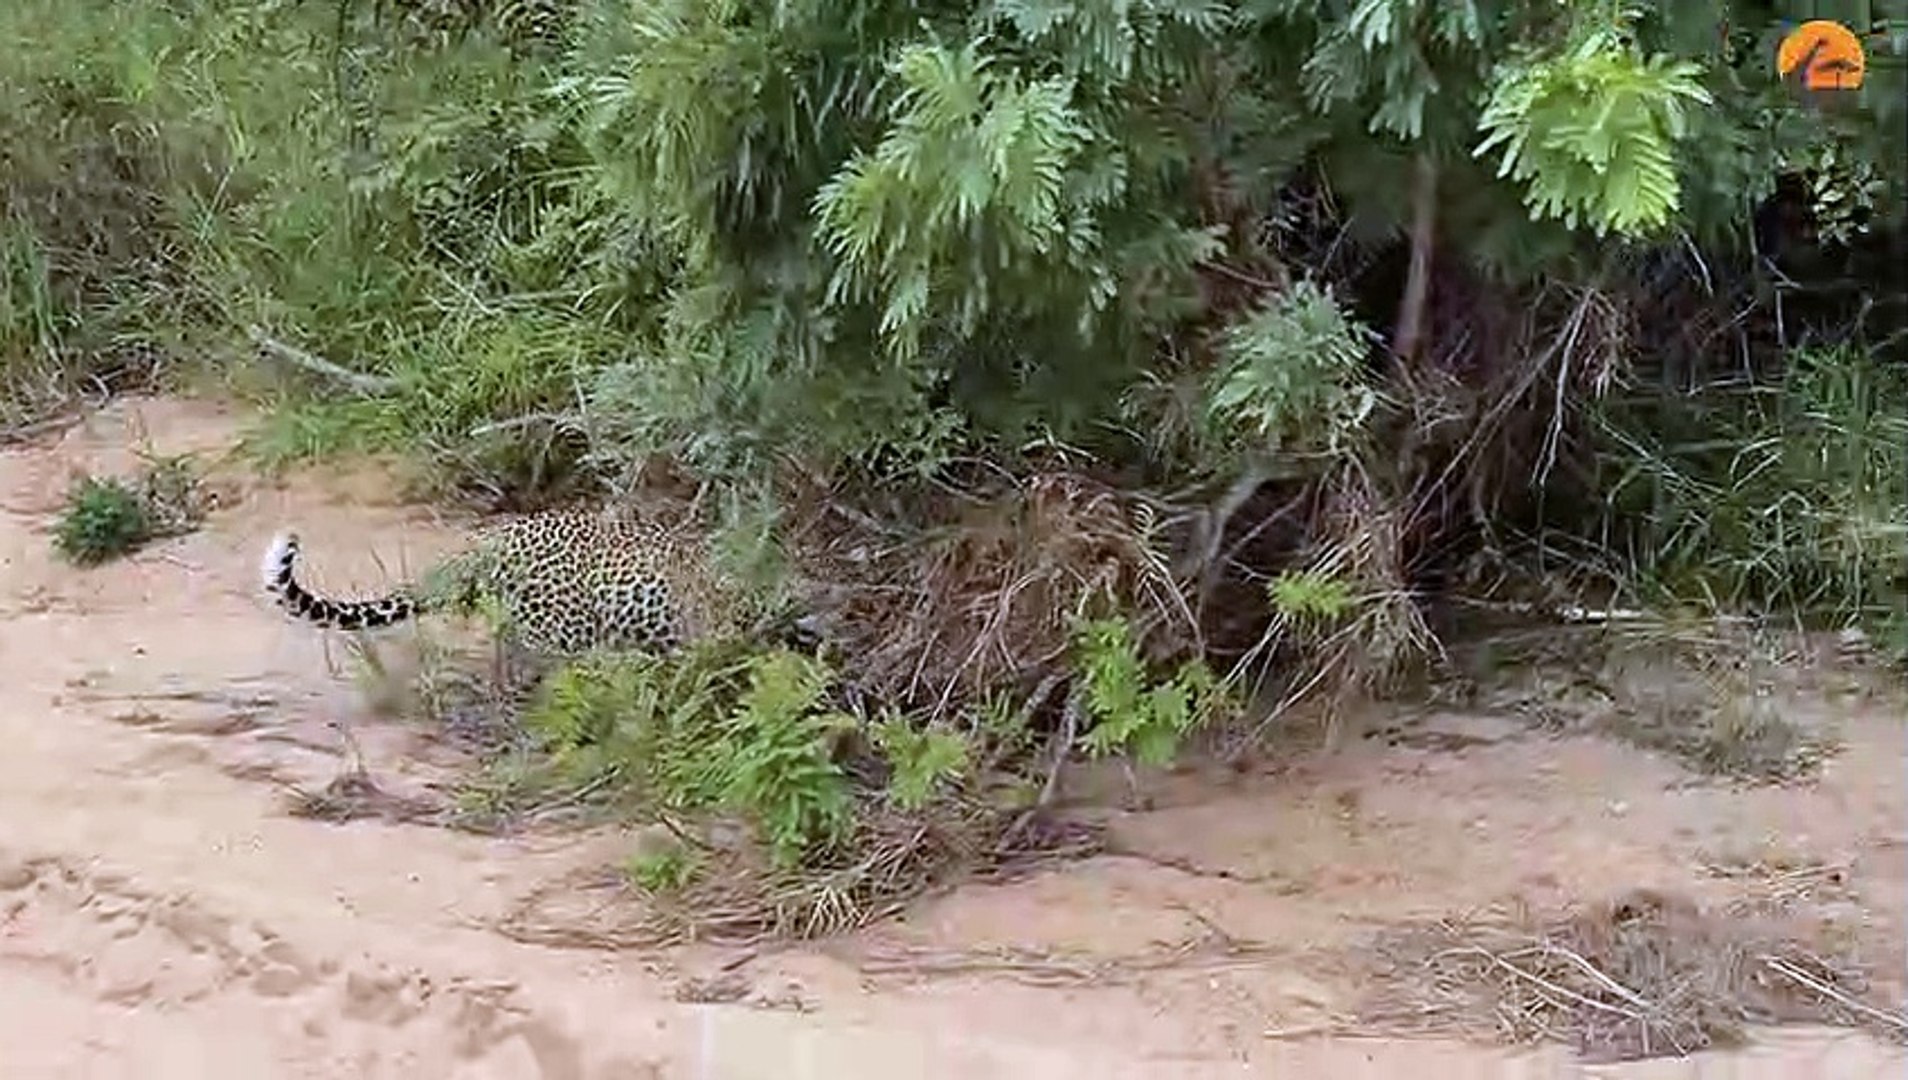 Innocent Baby Bird Walks up to Leopard - Crazy Ending 